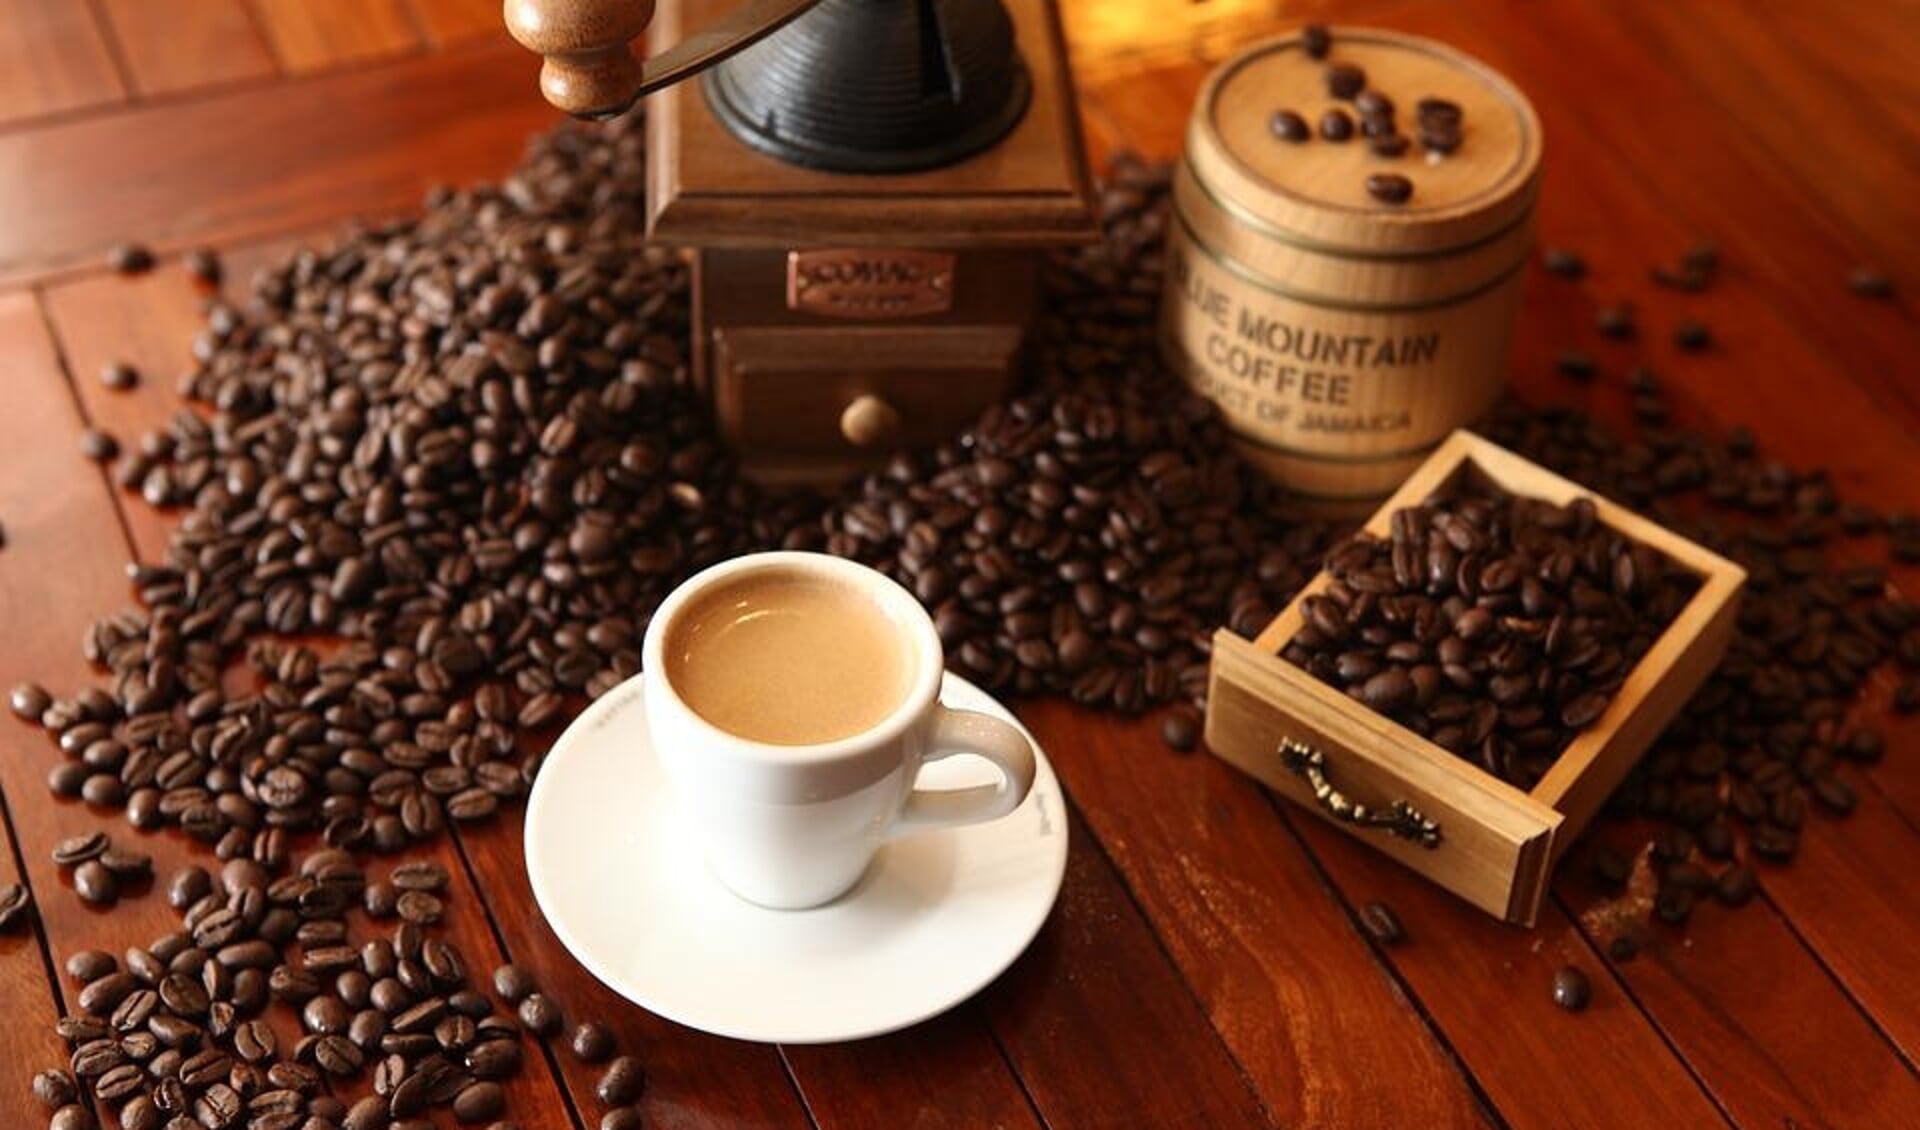 Gezellig koffie drinken met elkaar. (foto: Pixabay)